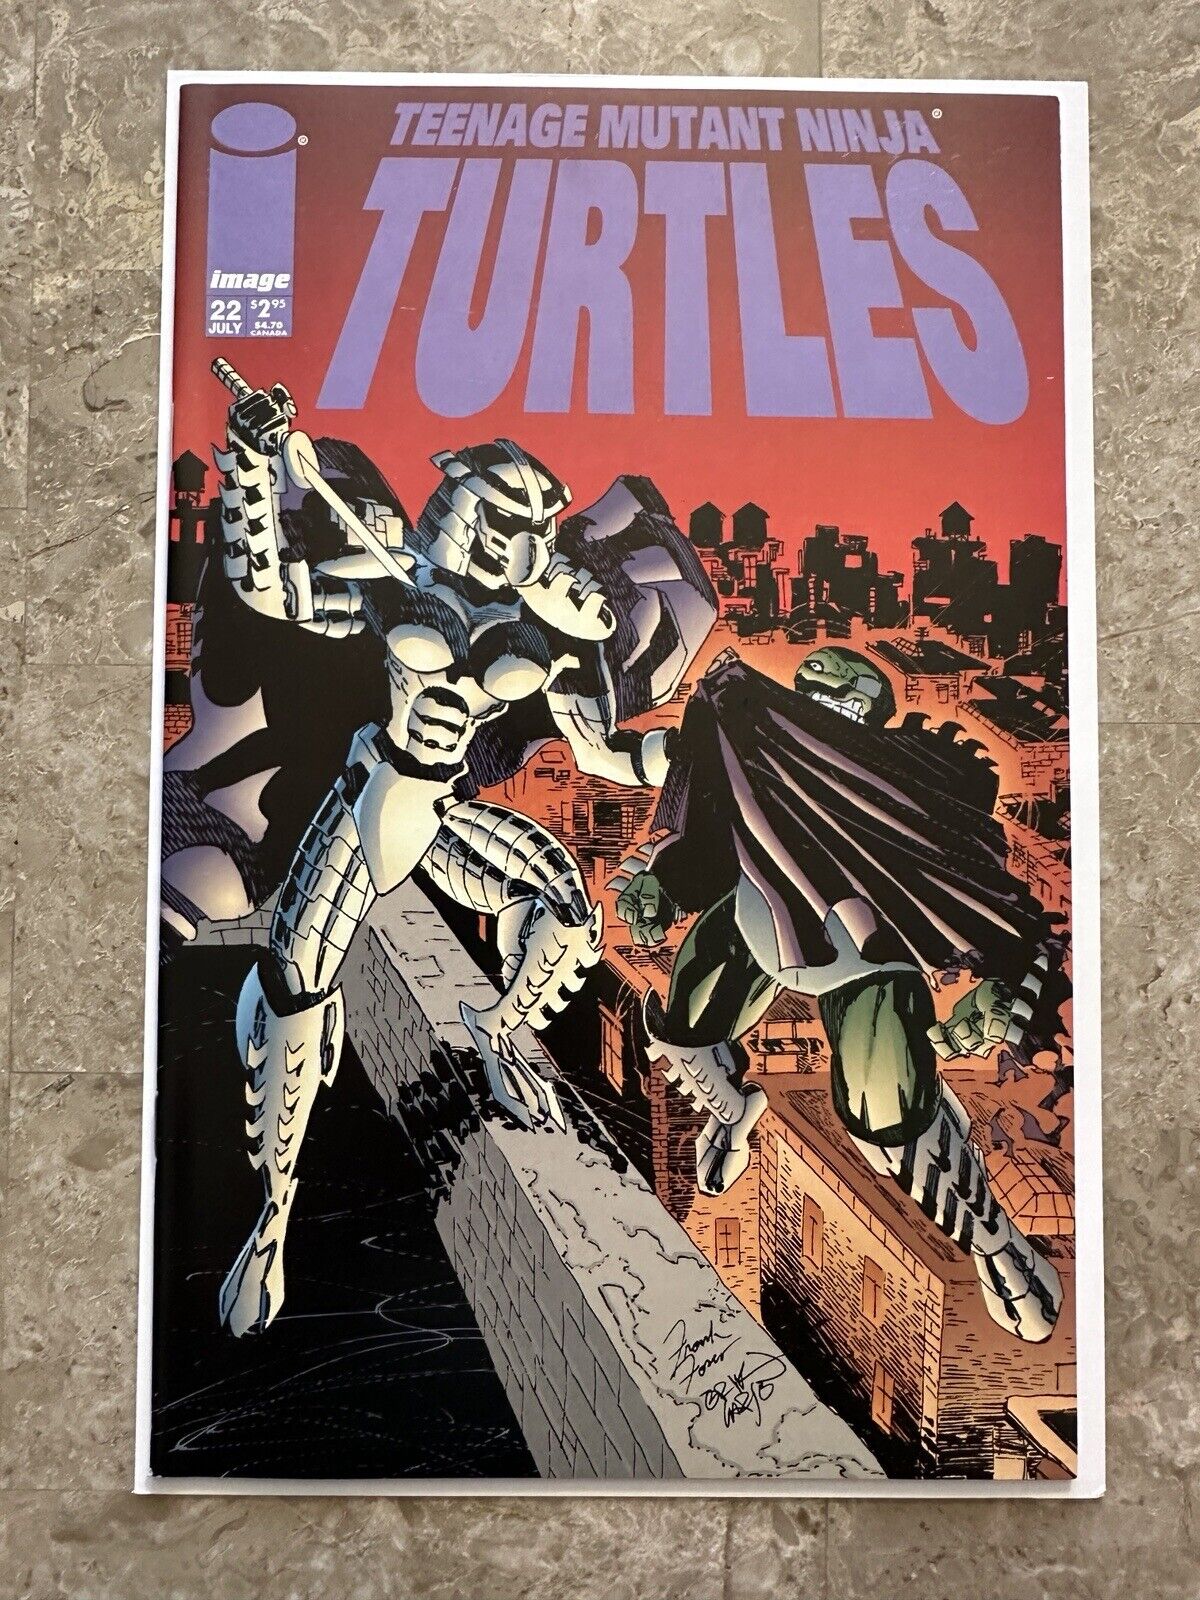 Teenage Mutant Ninja Turtles #22 VF (1999 Image Comics)